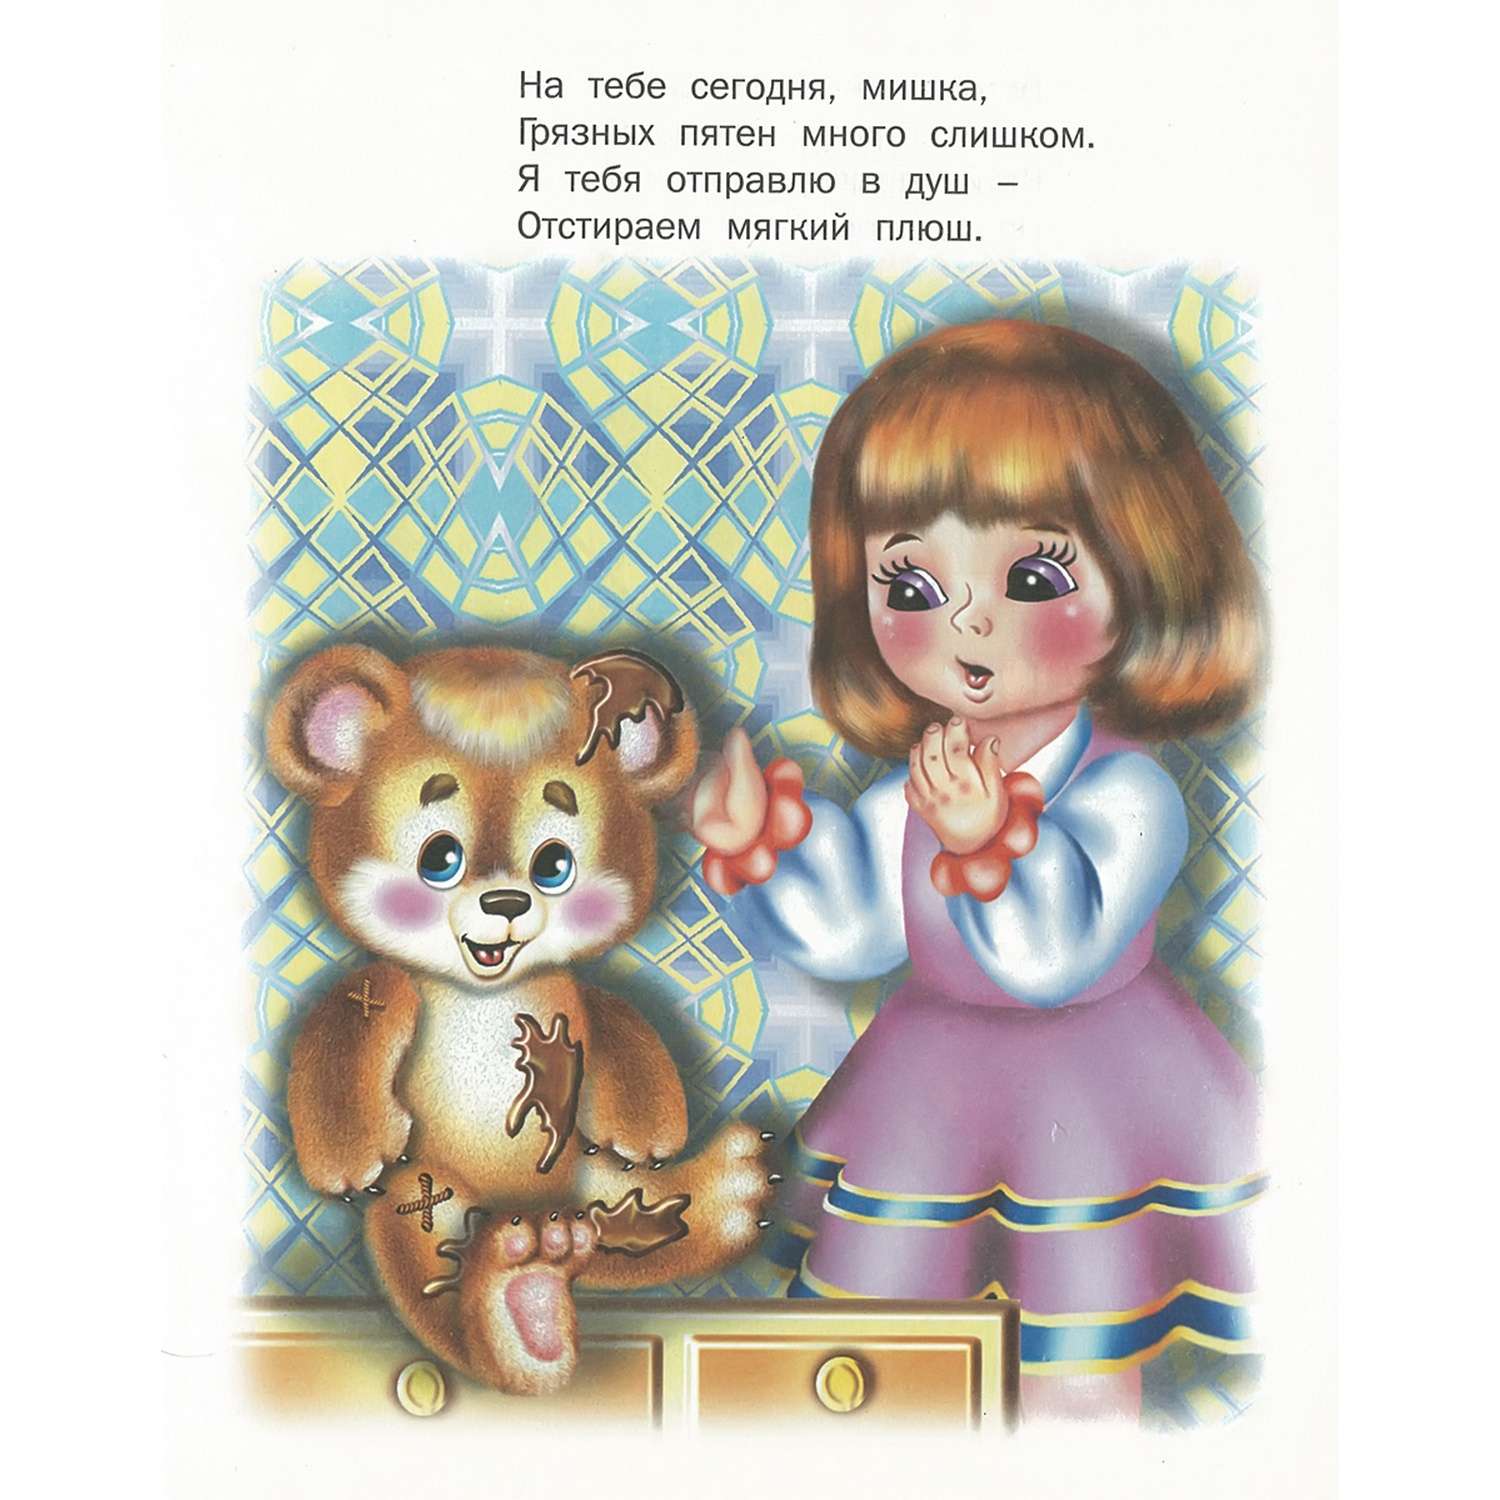 Книга Русич Поиграй-ка. Сборник стихов для детей - фото 2